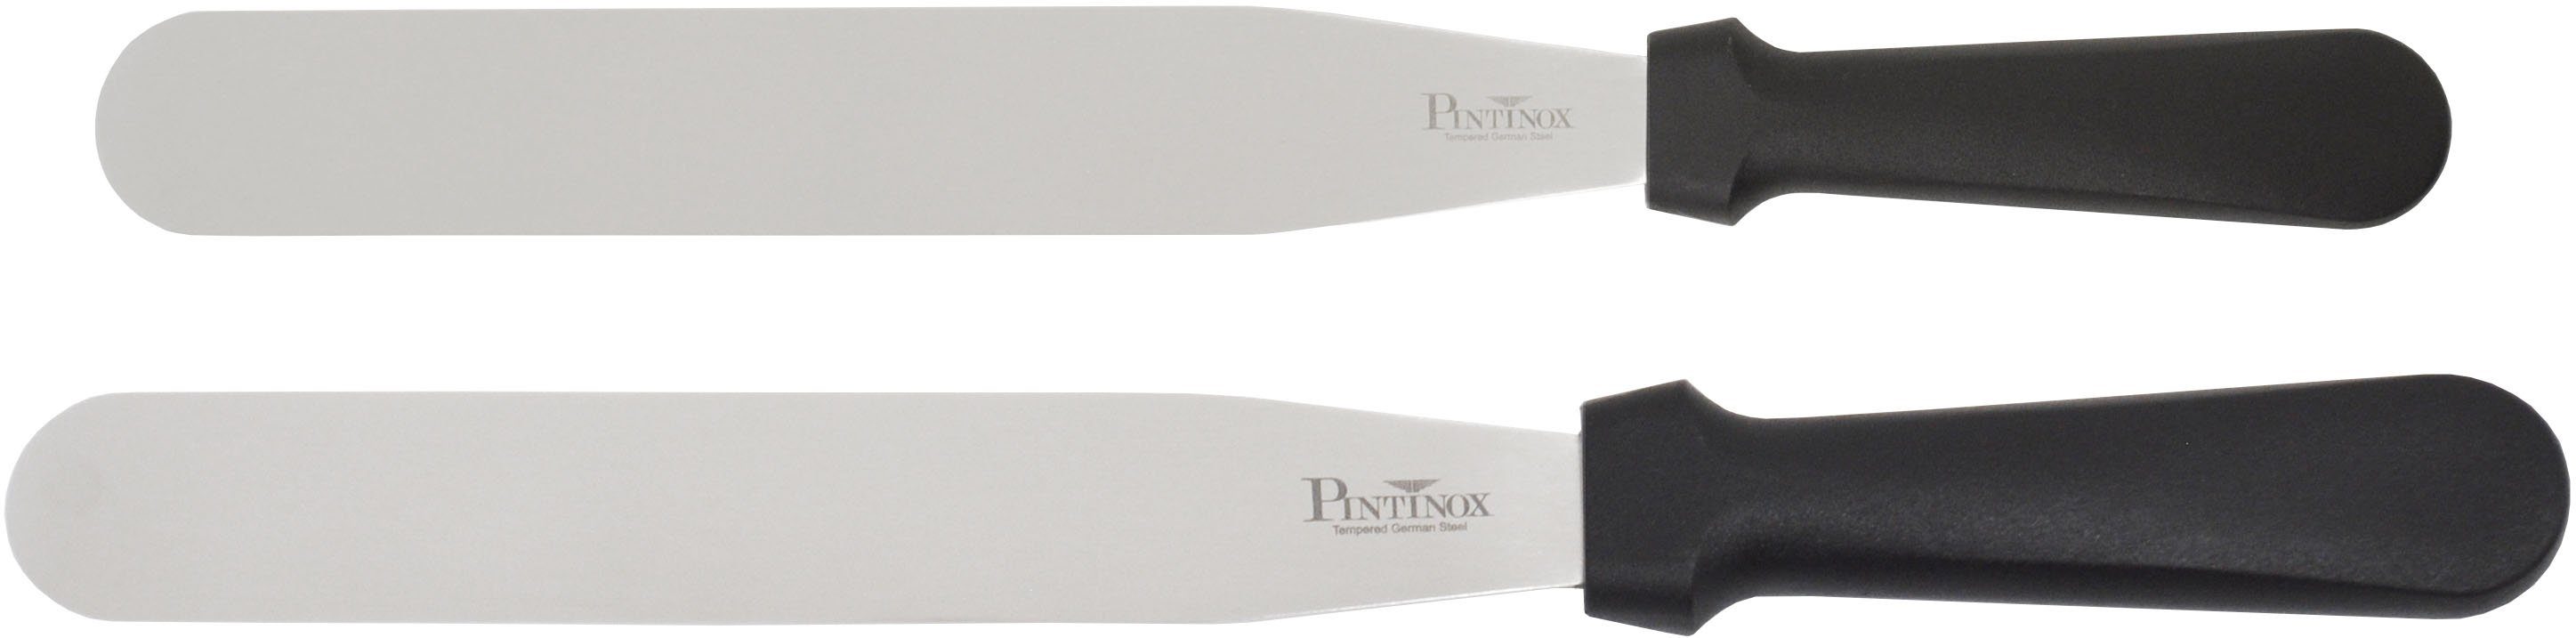 PINTINOX Streichpalette Professional, Edelstahl, spülmaschinengeeignet, 1 Spatel 1 cm Spatel 25,5 10,5cm